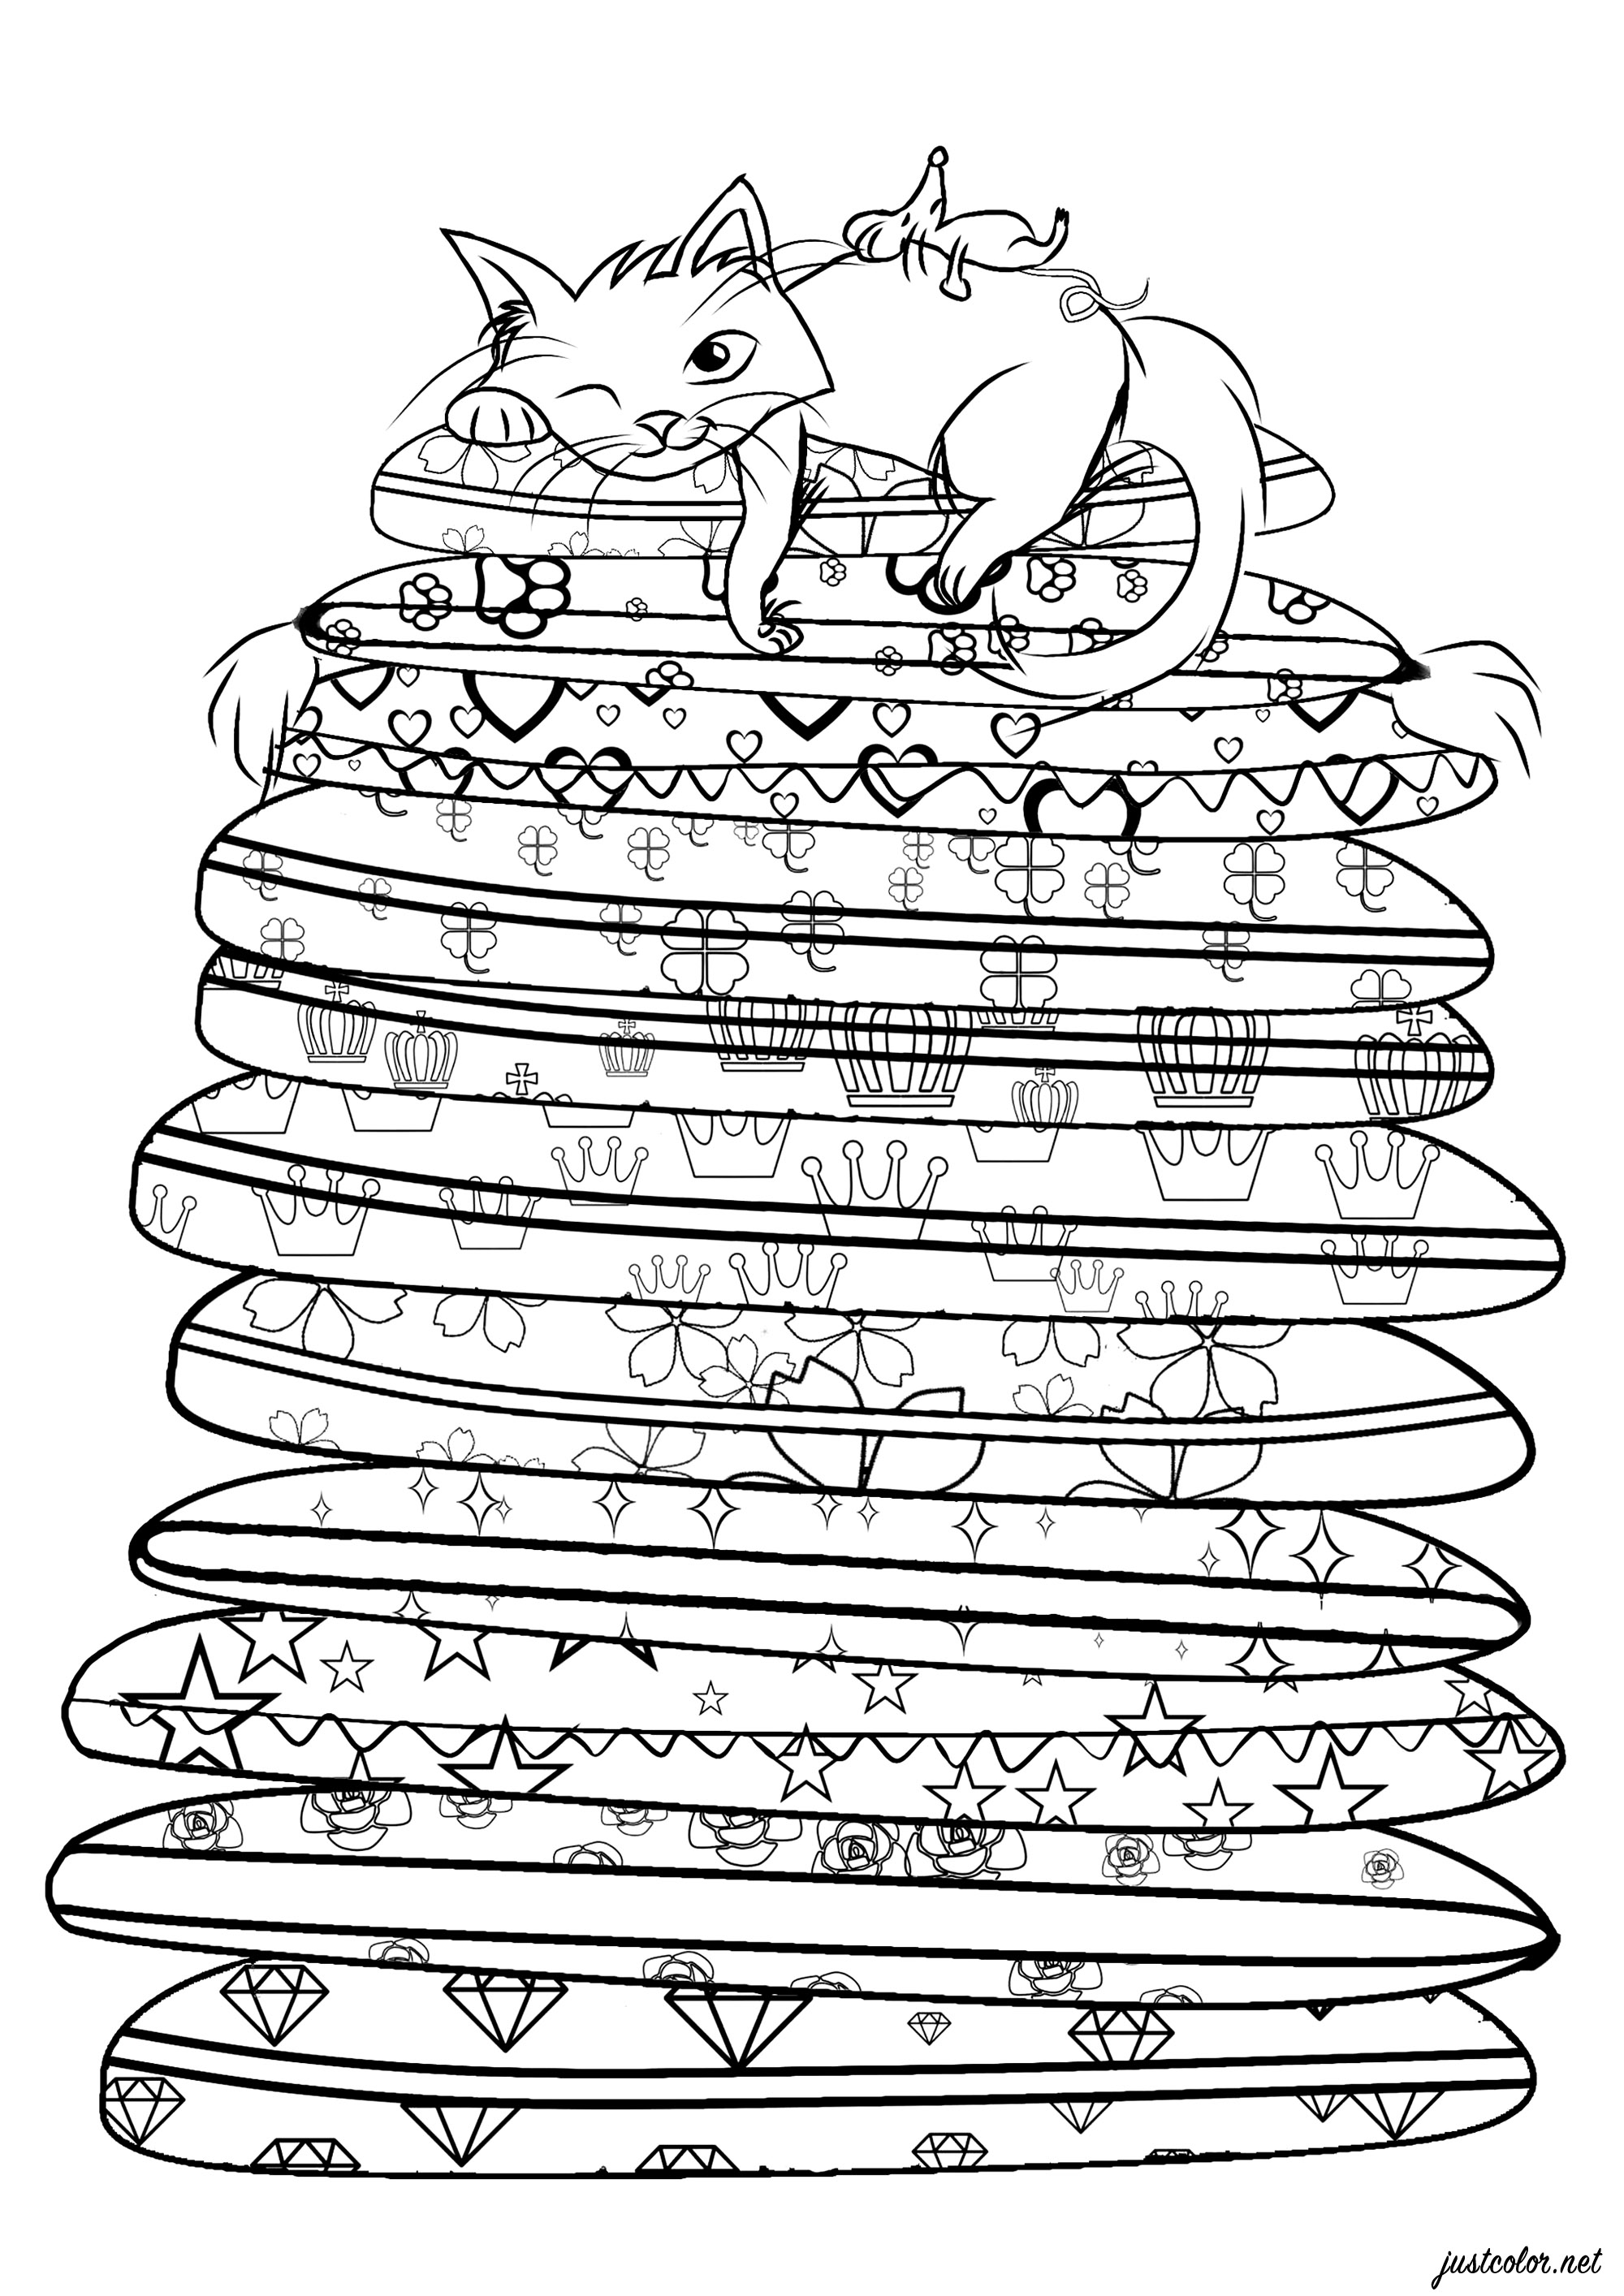 Chat se reposant sur un empilement de coussins aux motifs variés